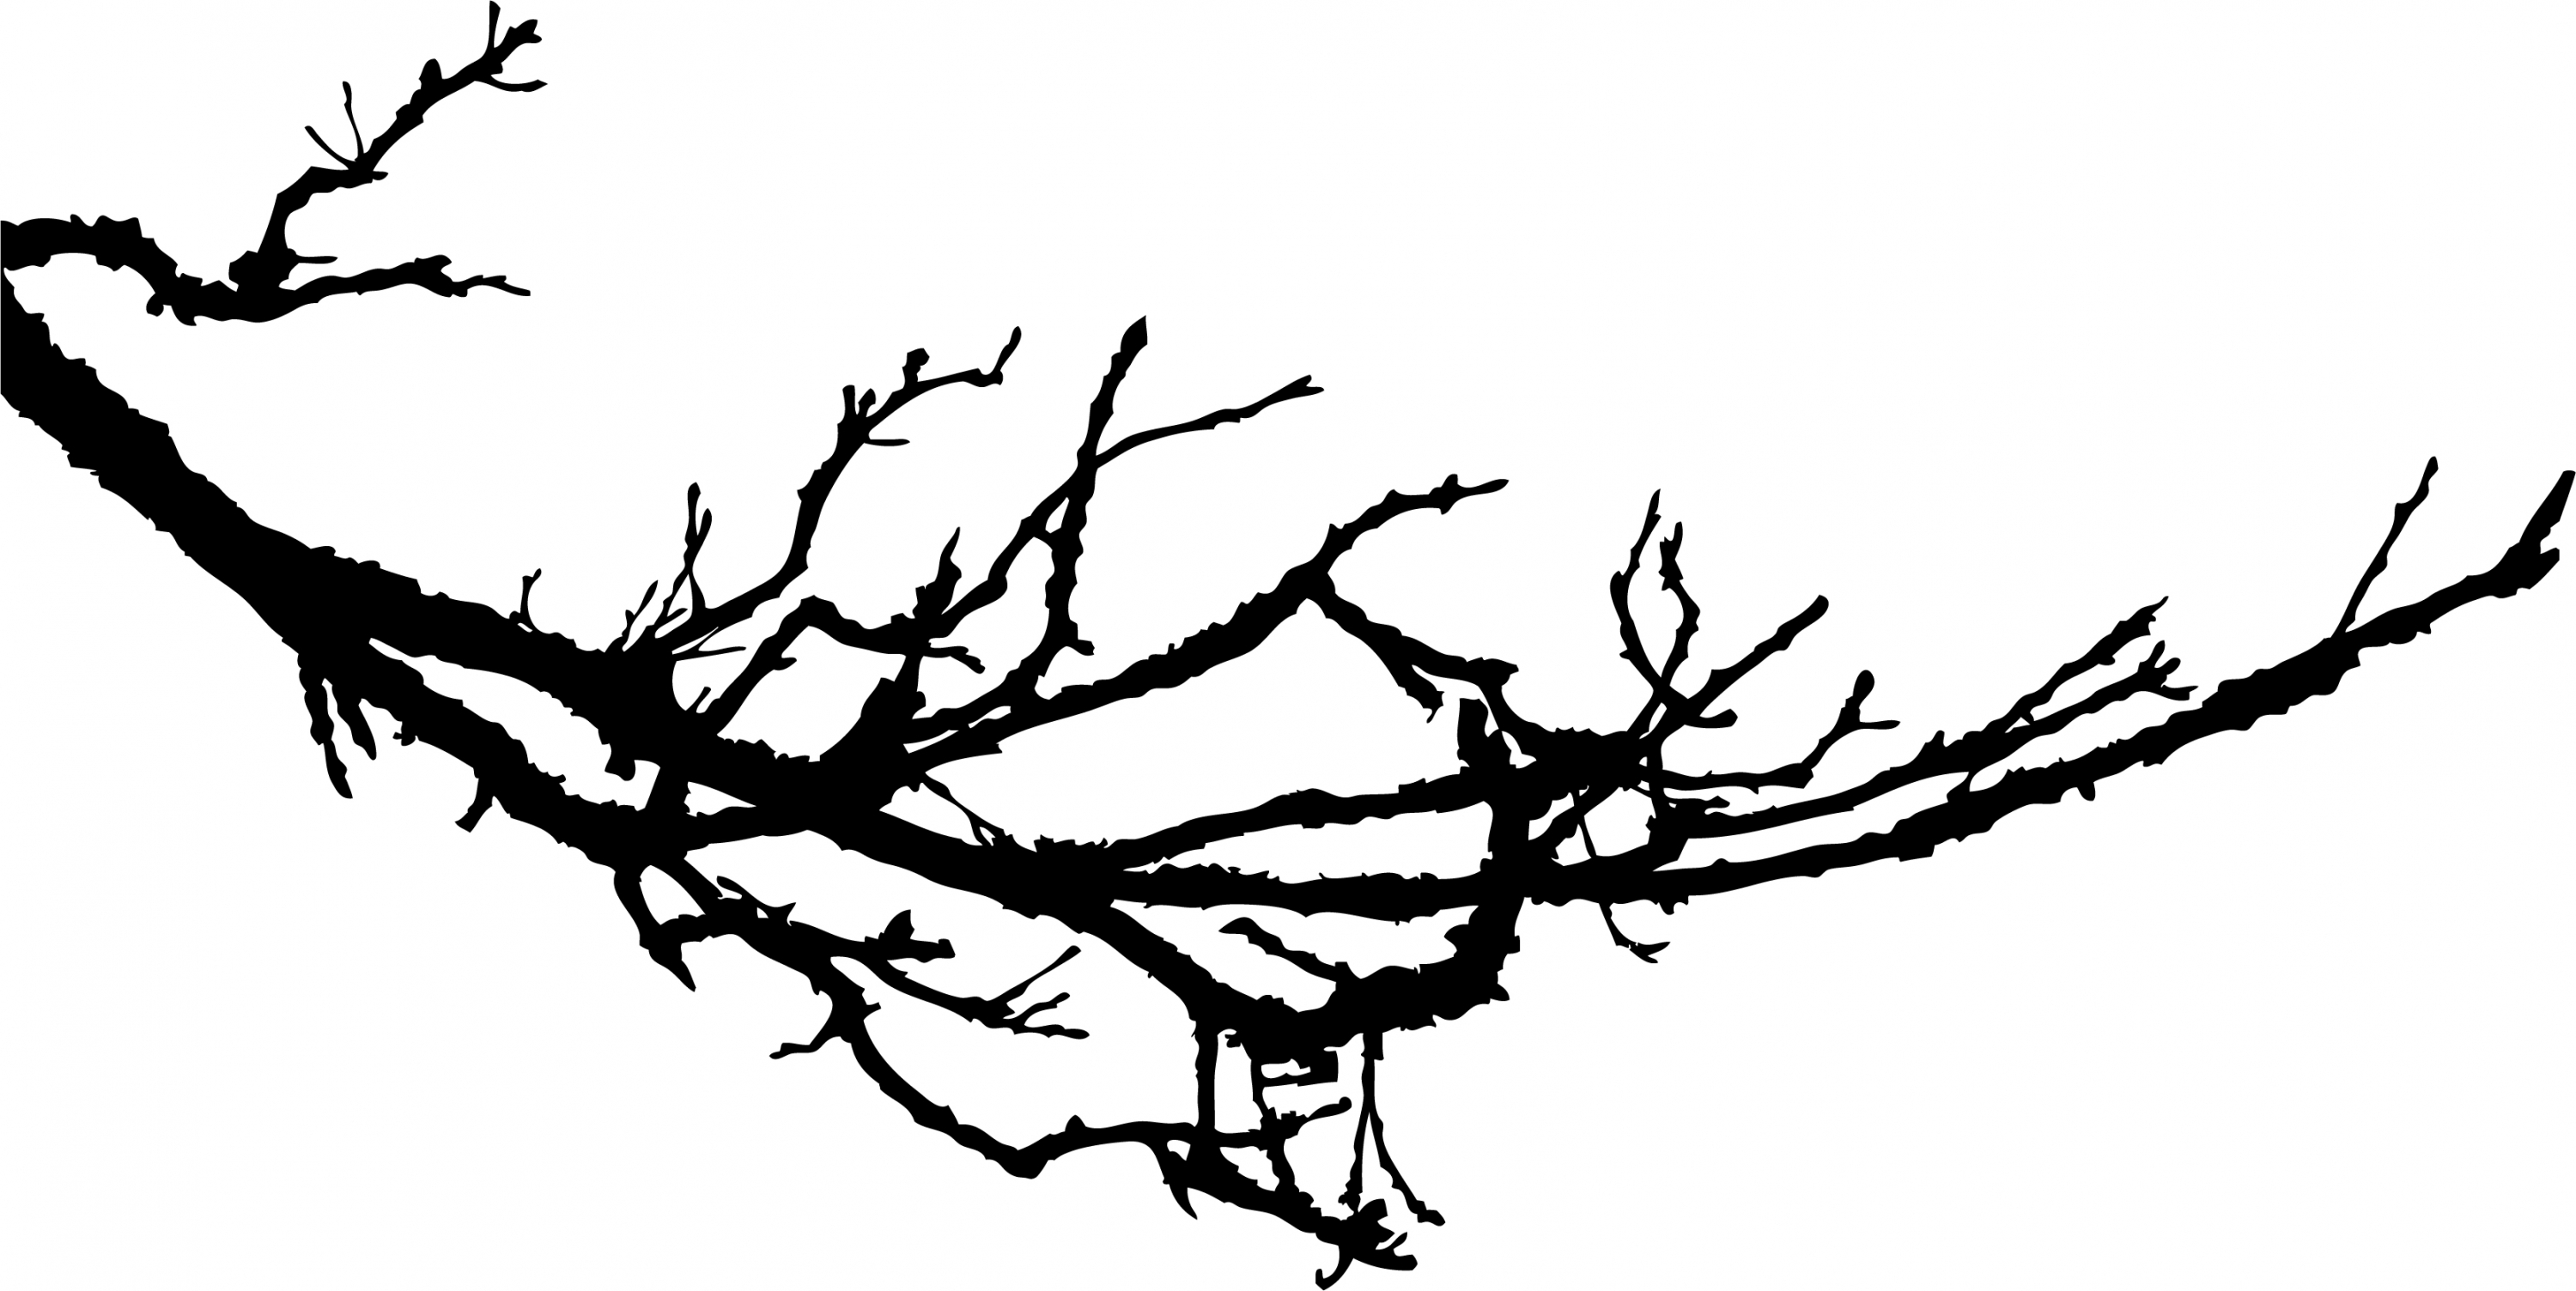 Branch 